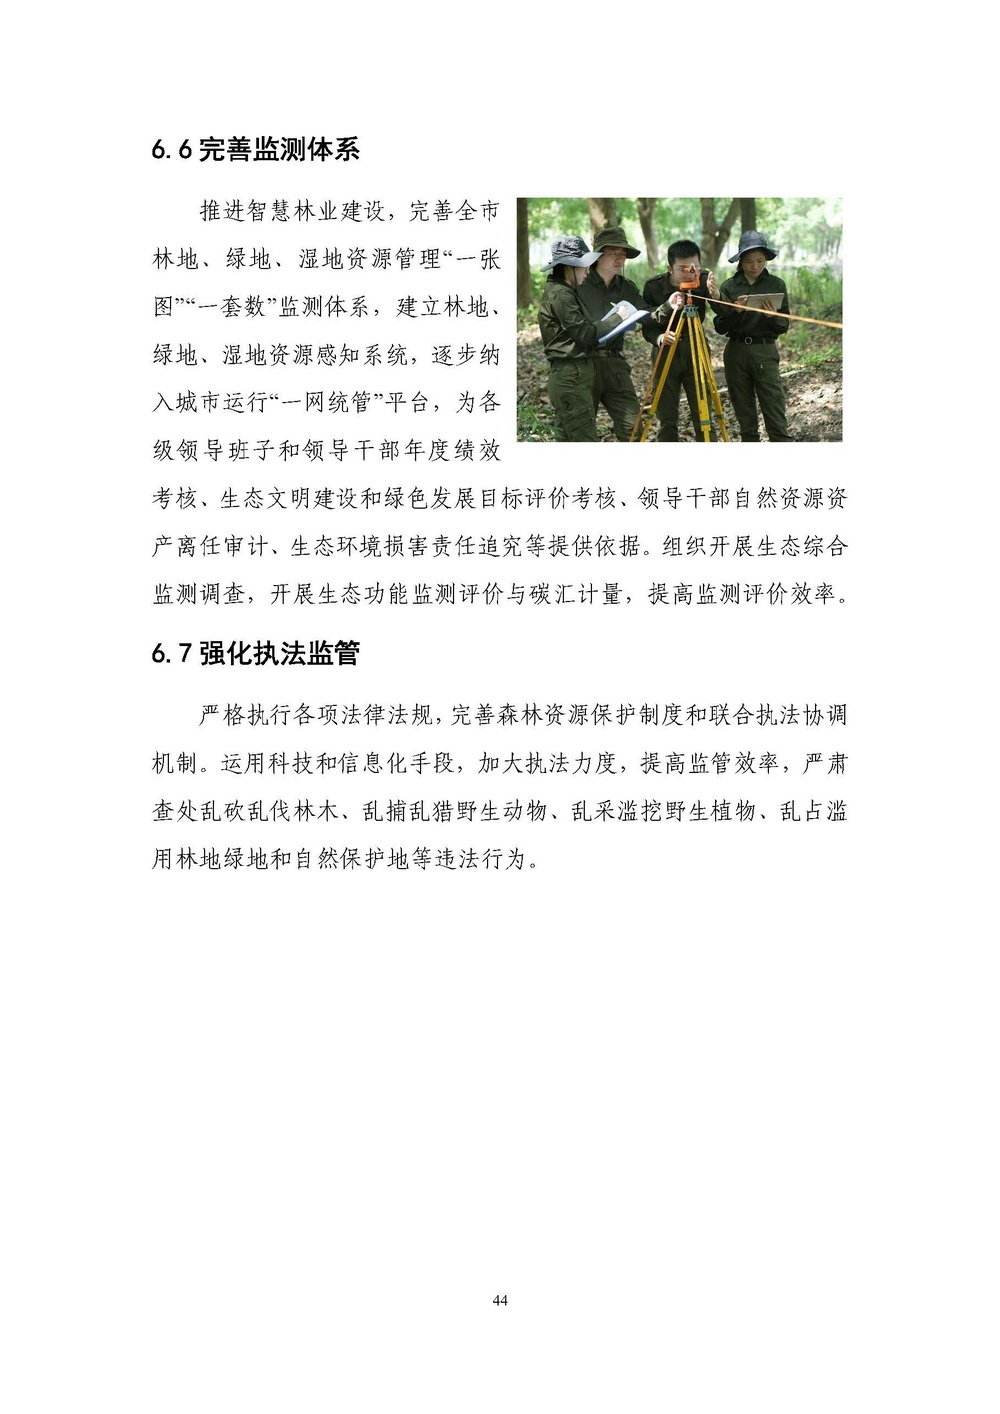 上海市森林和林地保护利用规划文本 公开稿 附图_页面_47.jpg